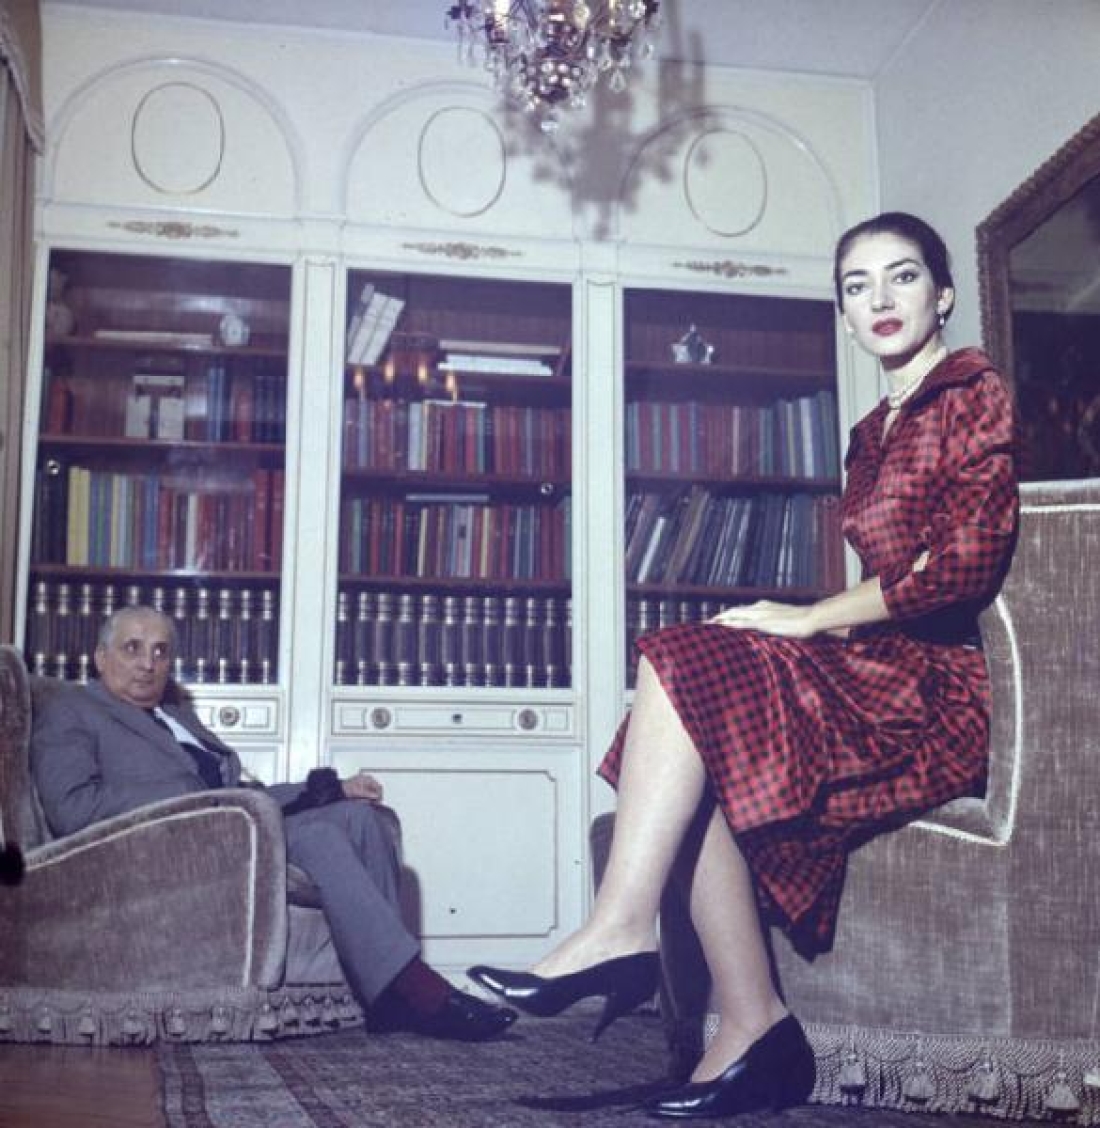 Η Μαρία Κάλλας με τον σύζυγό της Τζοβάννι Μπατίστα Μενεγκίνι, τον Τίτα, στο σπίτι τους στο Μιλάνο το 1957 